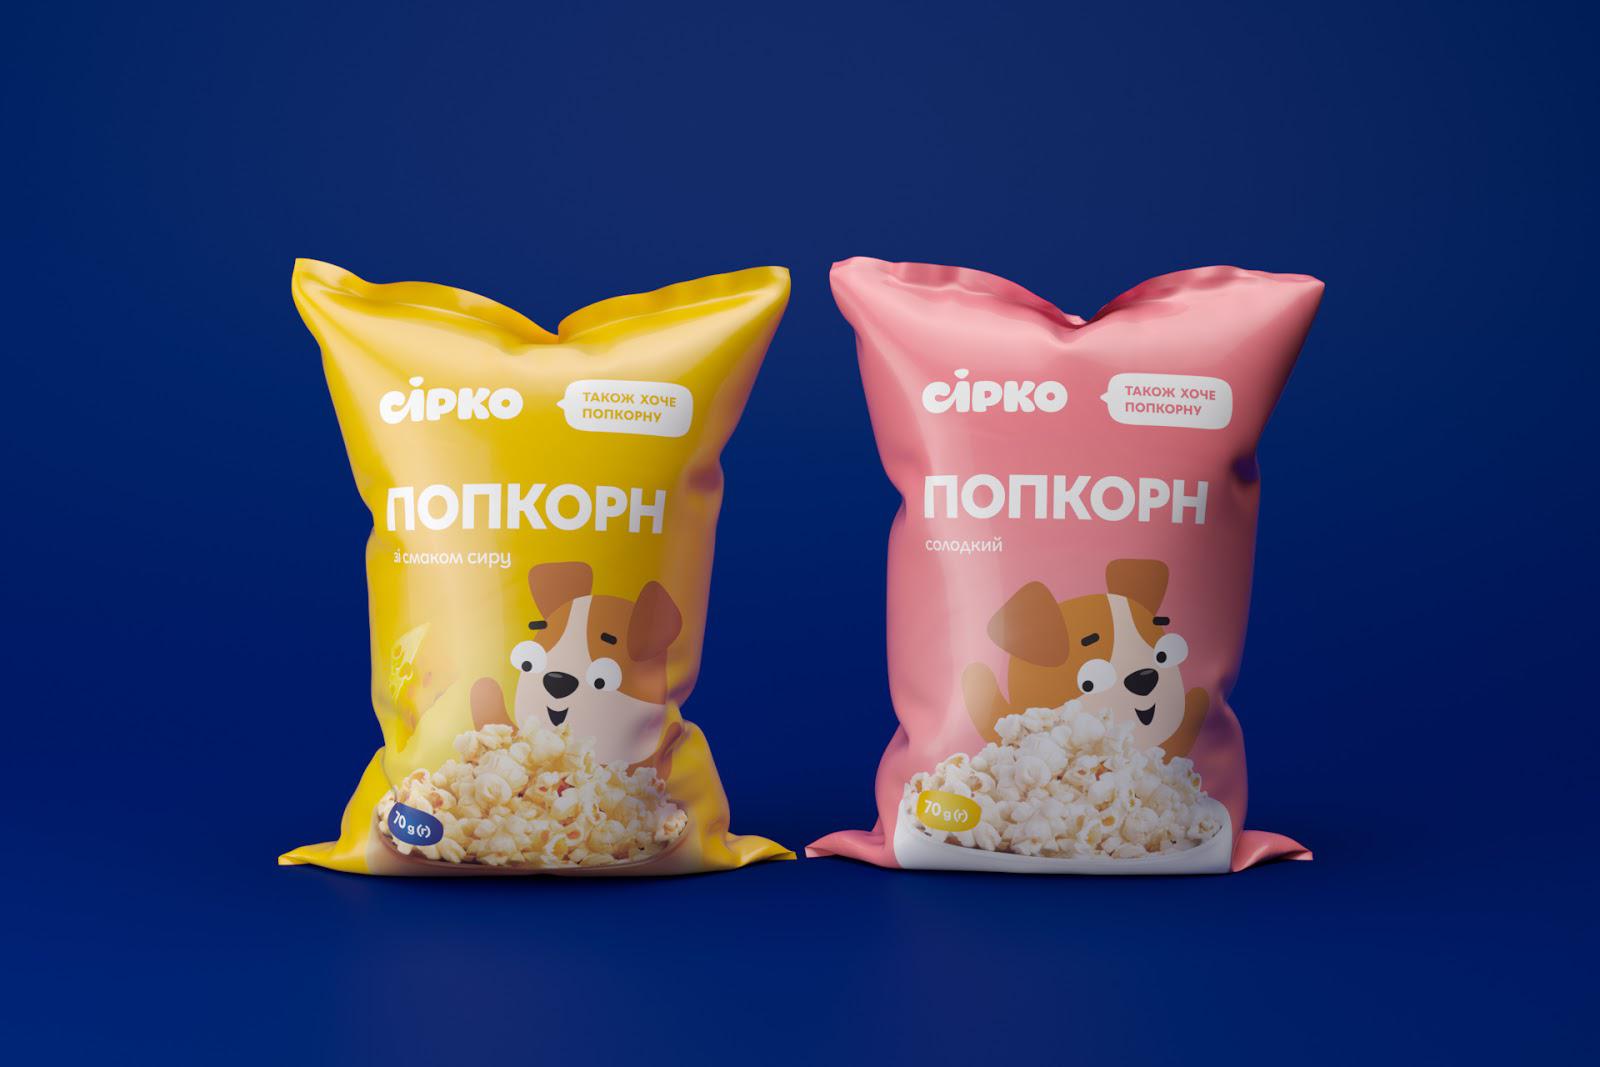 儿童食品包装设计 创意儿童食品包装设计 儿童食品包装设计公司哪家好 儿童食品包装设计公司 第1张